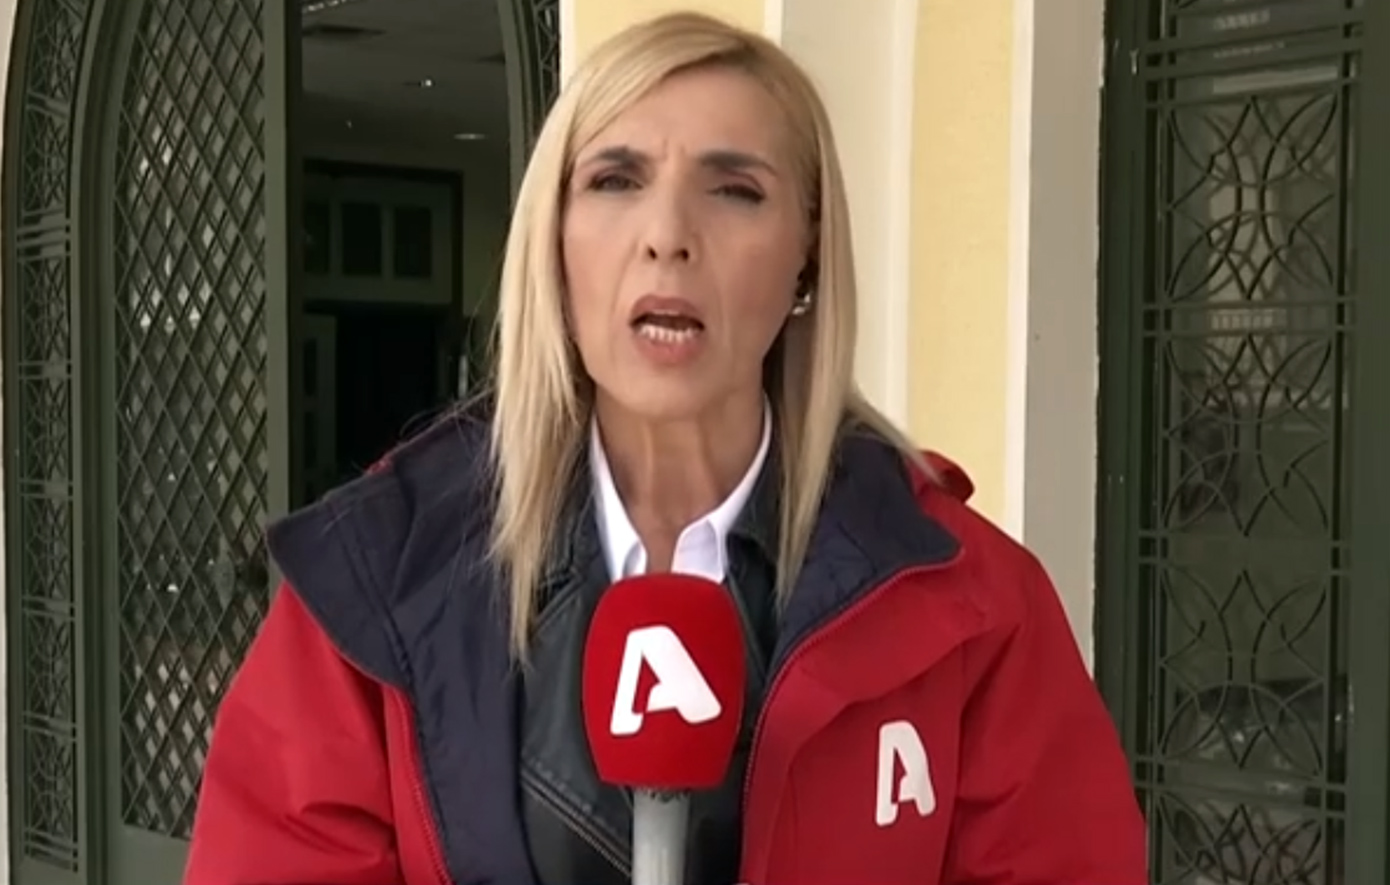 Θύμα επίθεσης η δημοσιογράφος Ρένα Κουβελιώτη κατά τη διάρκεια ρεπορτάζ – Τραυματίστηκε σοβαρά